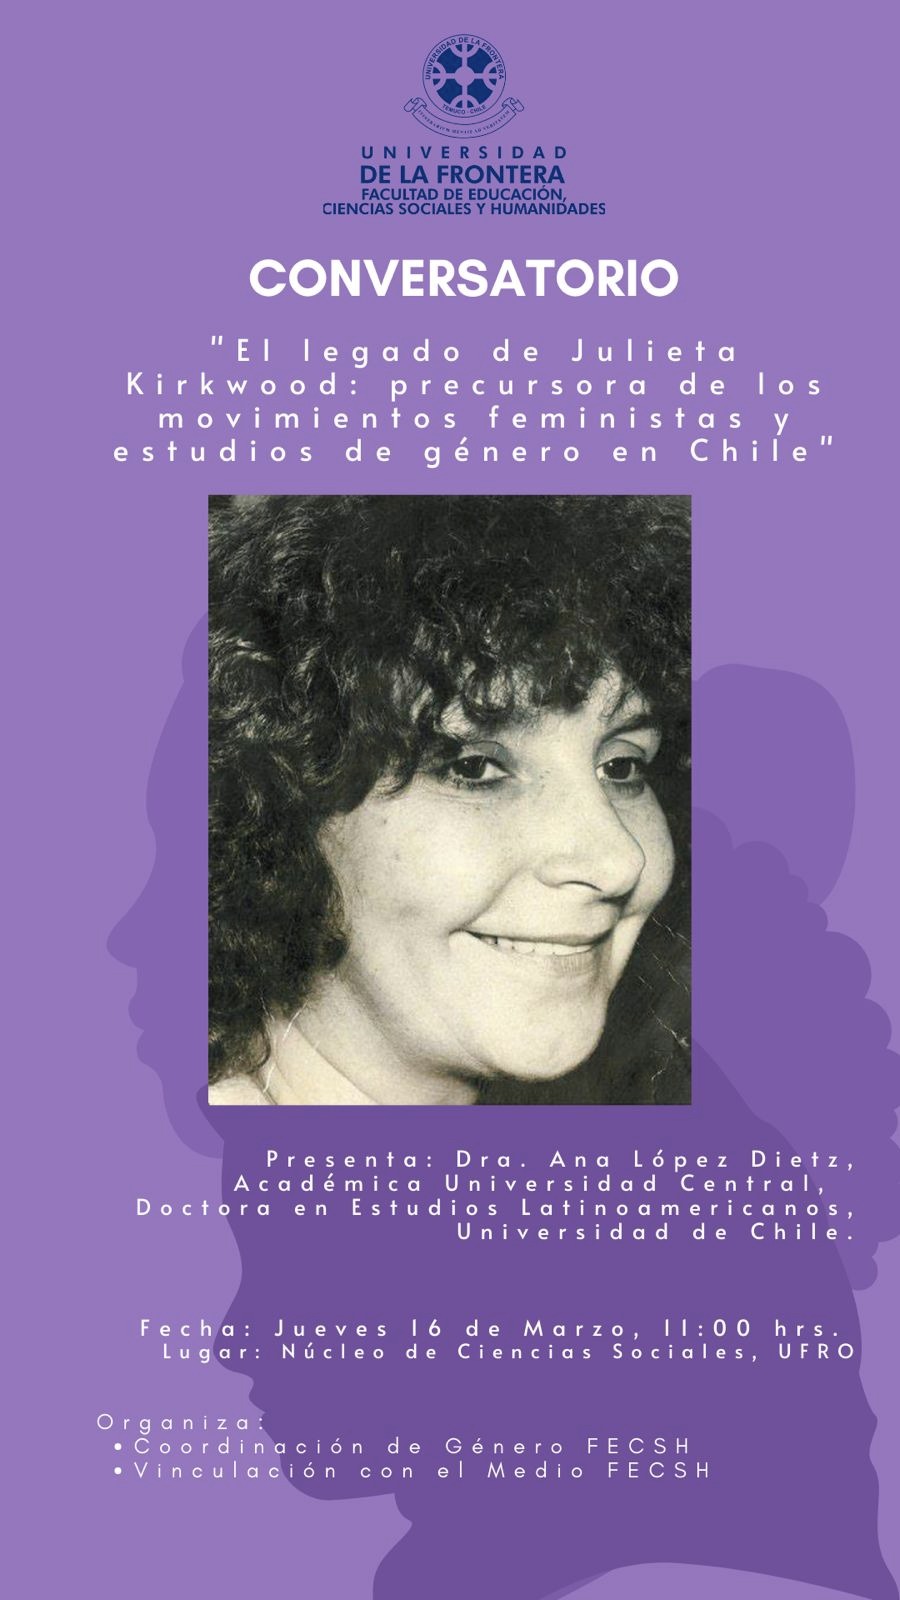 Invitación al Conversatorio «El legado de Julieta Kirkwood: precursora de los movimientos feministas y estudios de género en Chile»